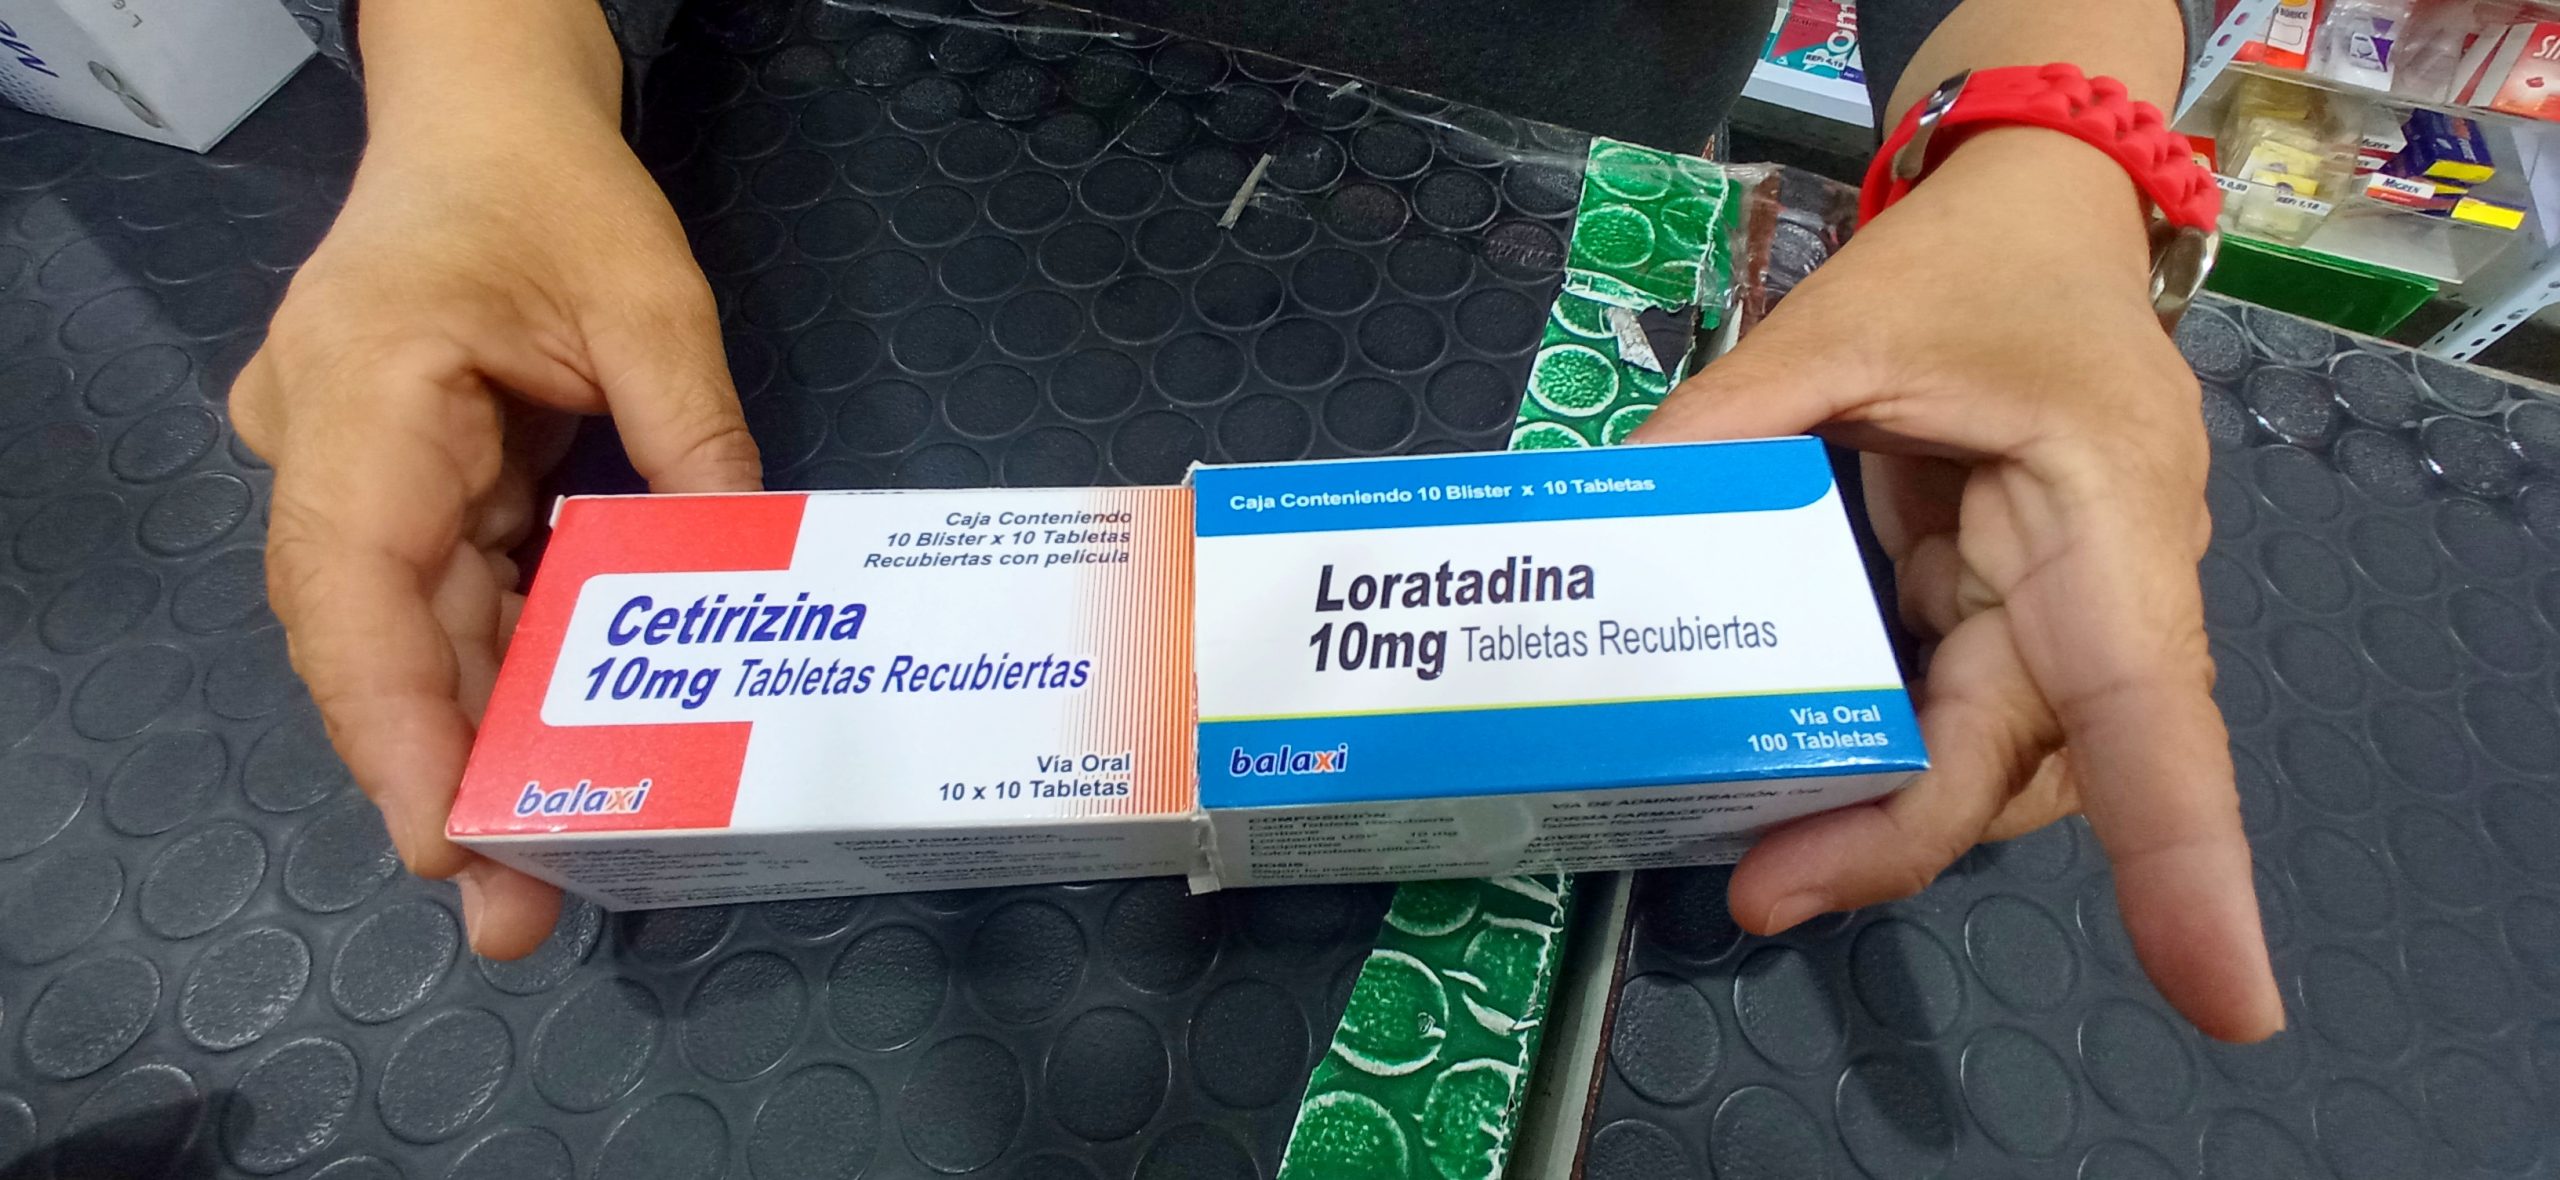 Loratadina y cetirizina se <strong>consiguen entre Bs. 8,45 y Bs. 14,00  </strong>